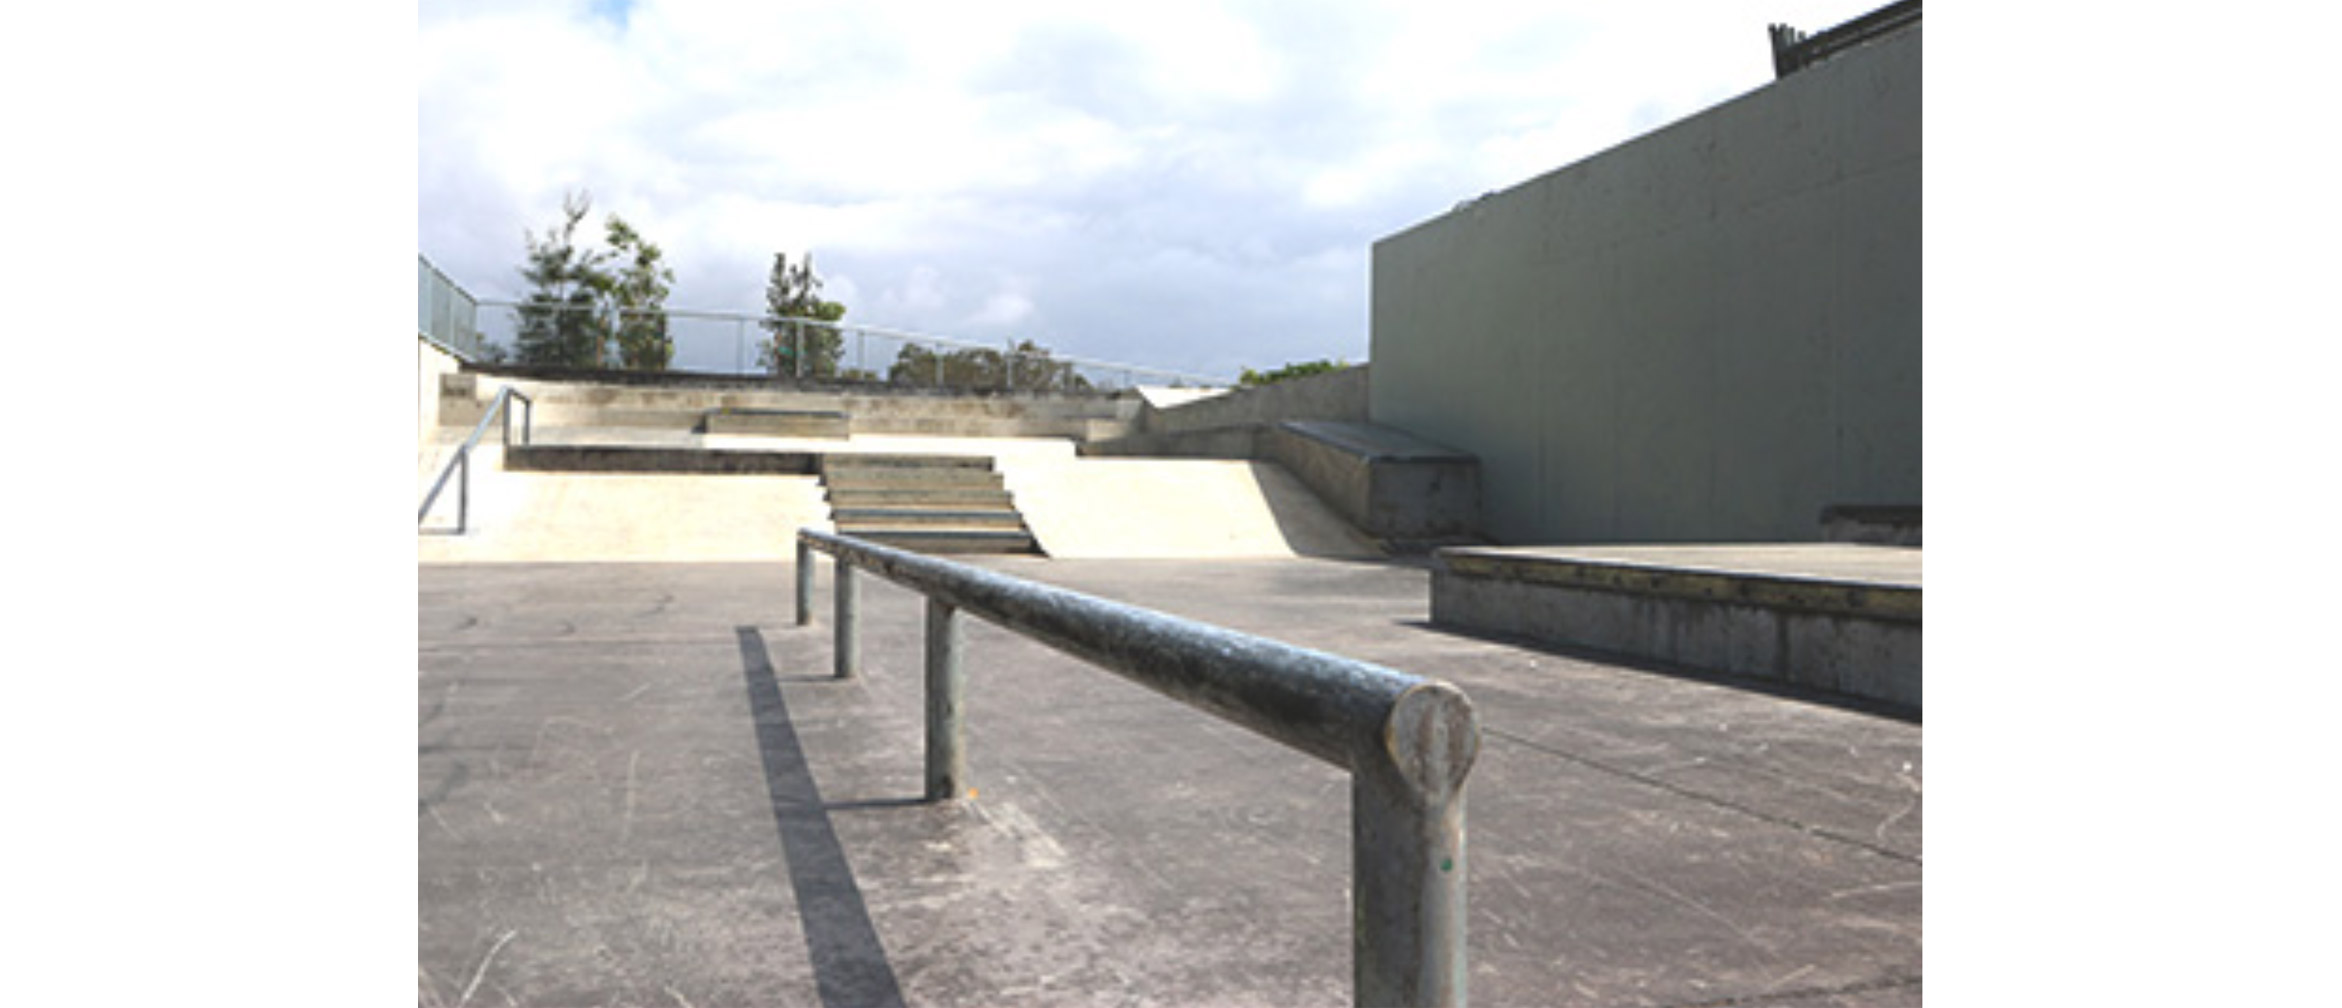 Randwick skate park street section